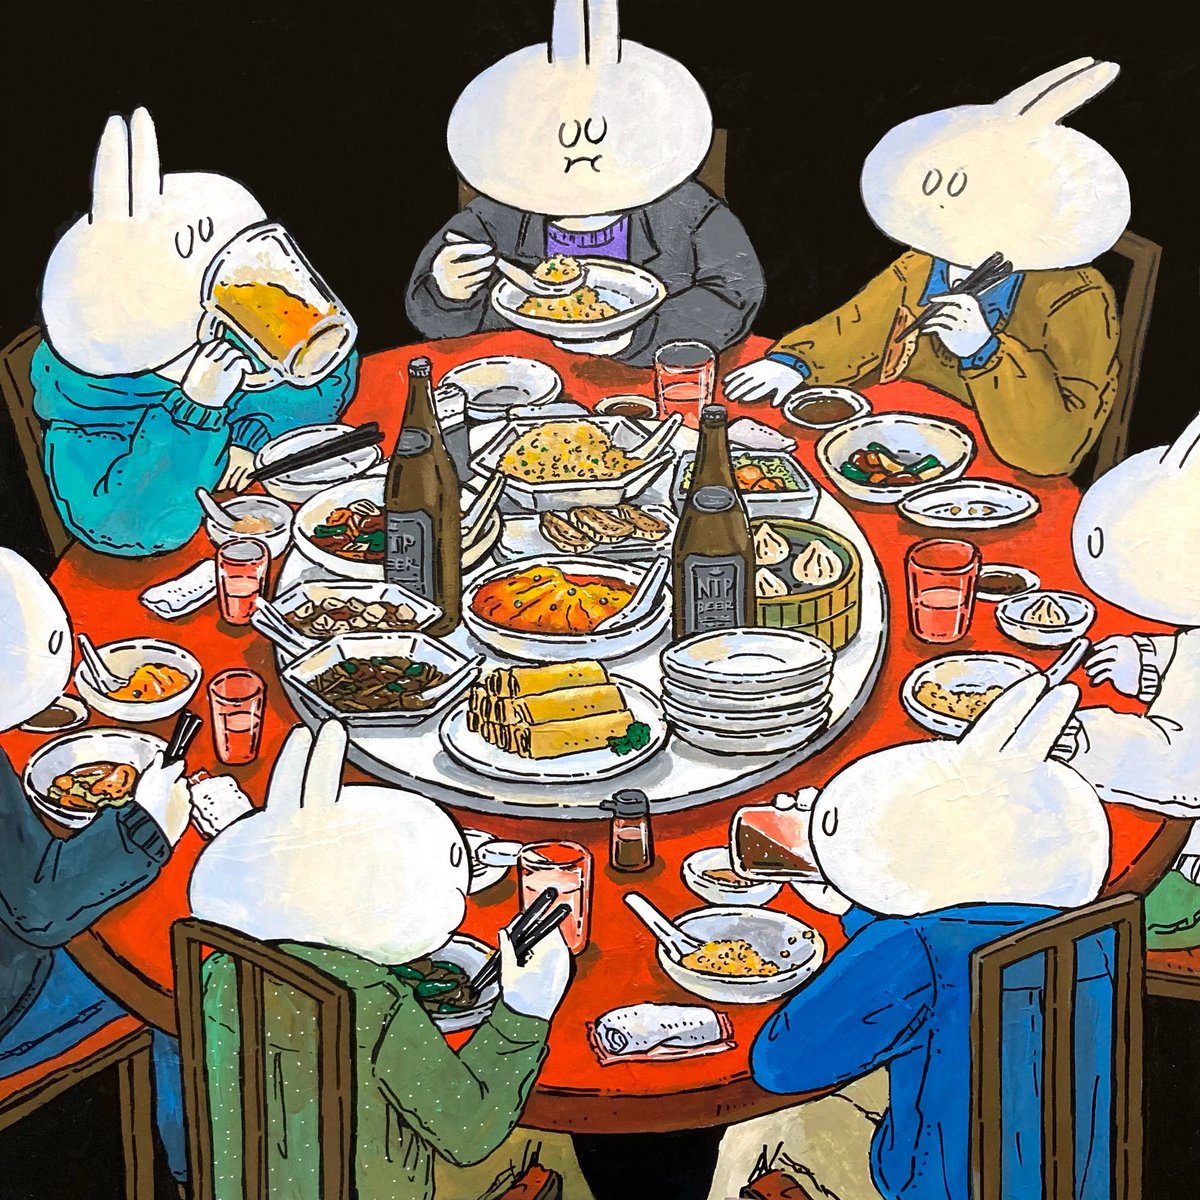 「憧れの中華テーブル うさぎさんがあまり楽しくなさそうに食べてるのがミソです」|ヨシサコツバサ(お仕事募集中)のイラスト